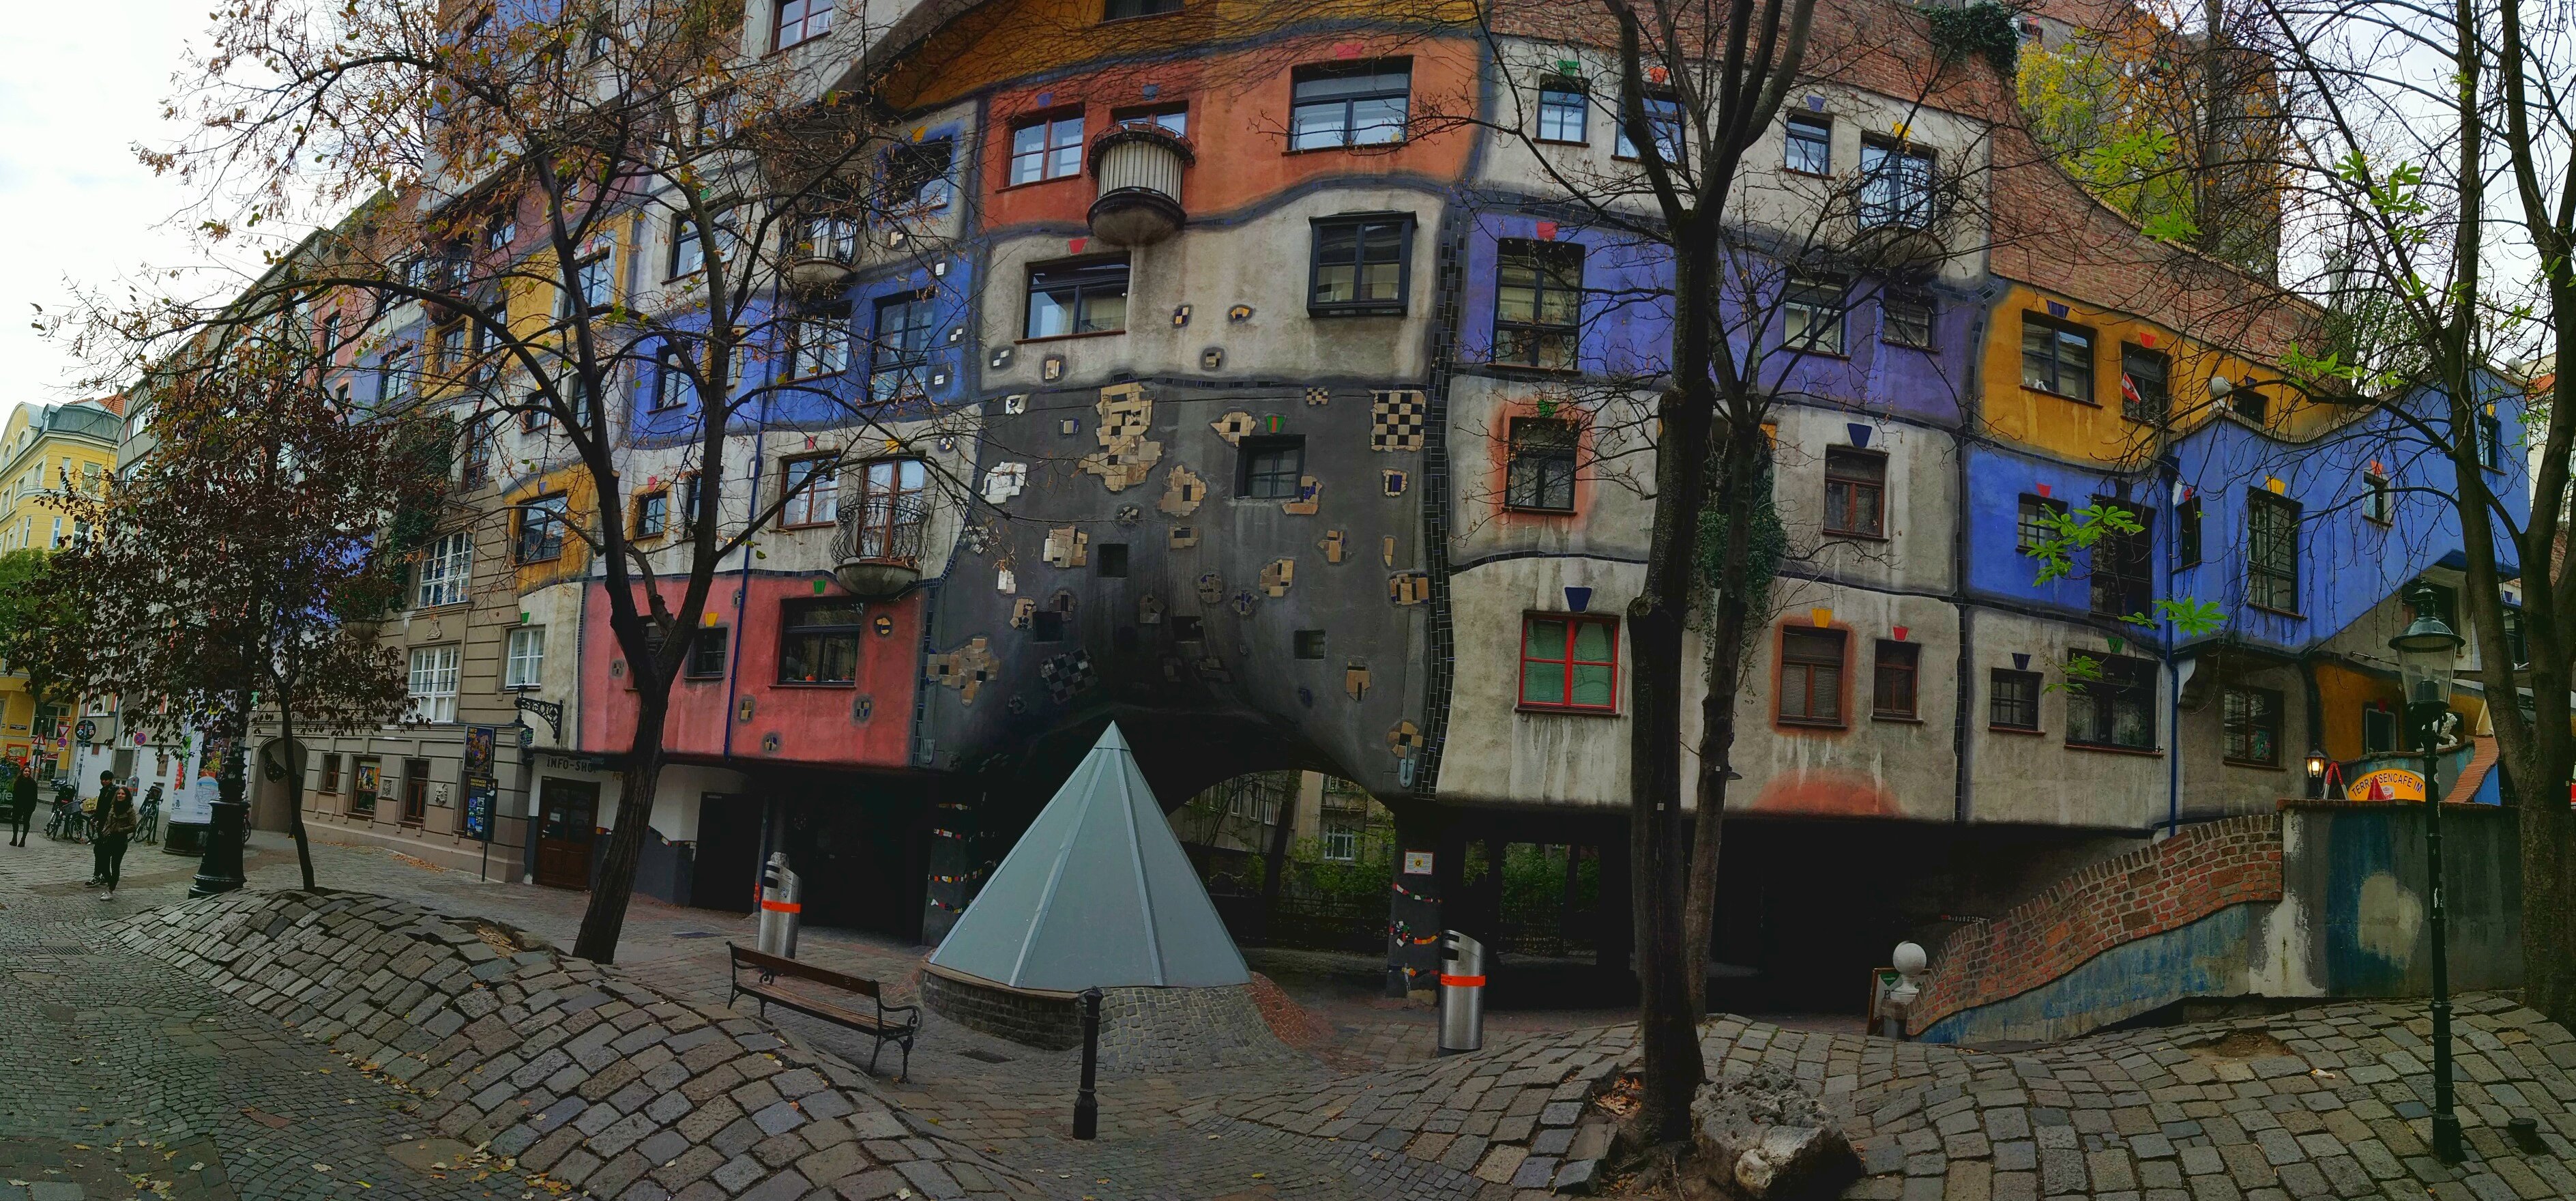 Hundertwasserhaus, complesso di case popolari